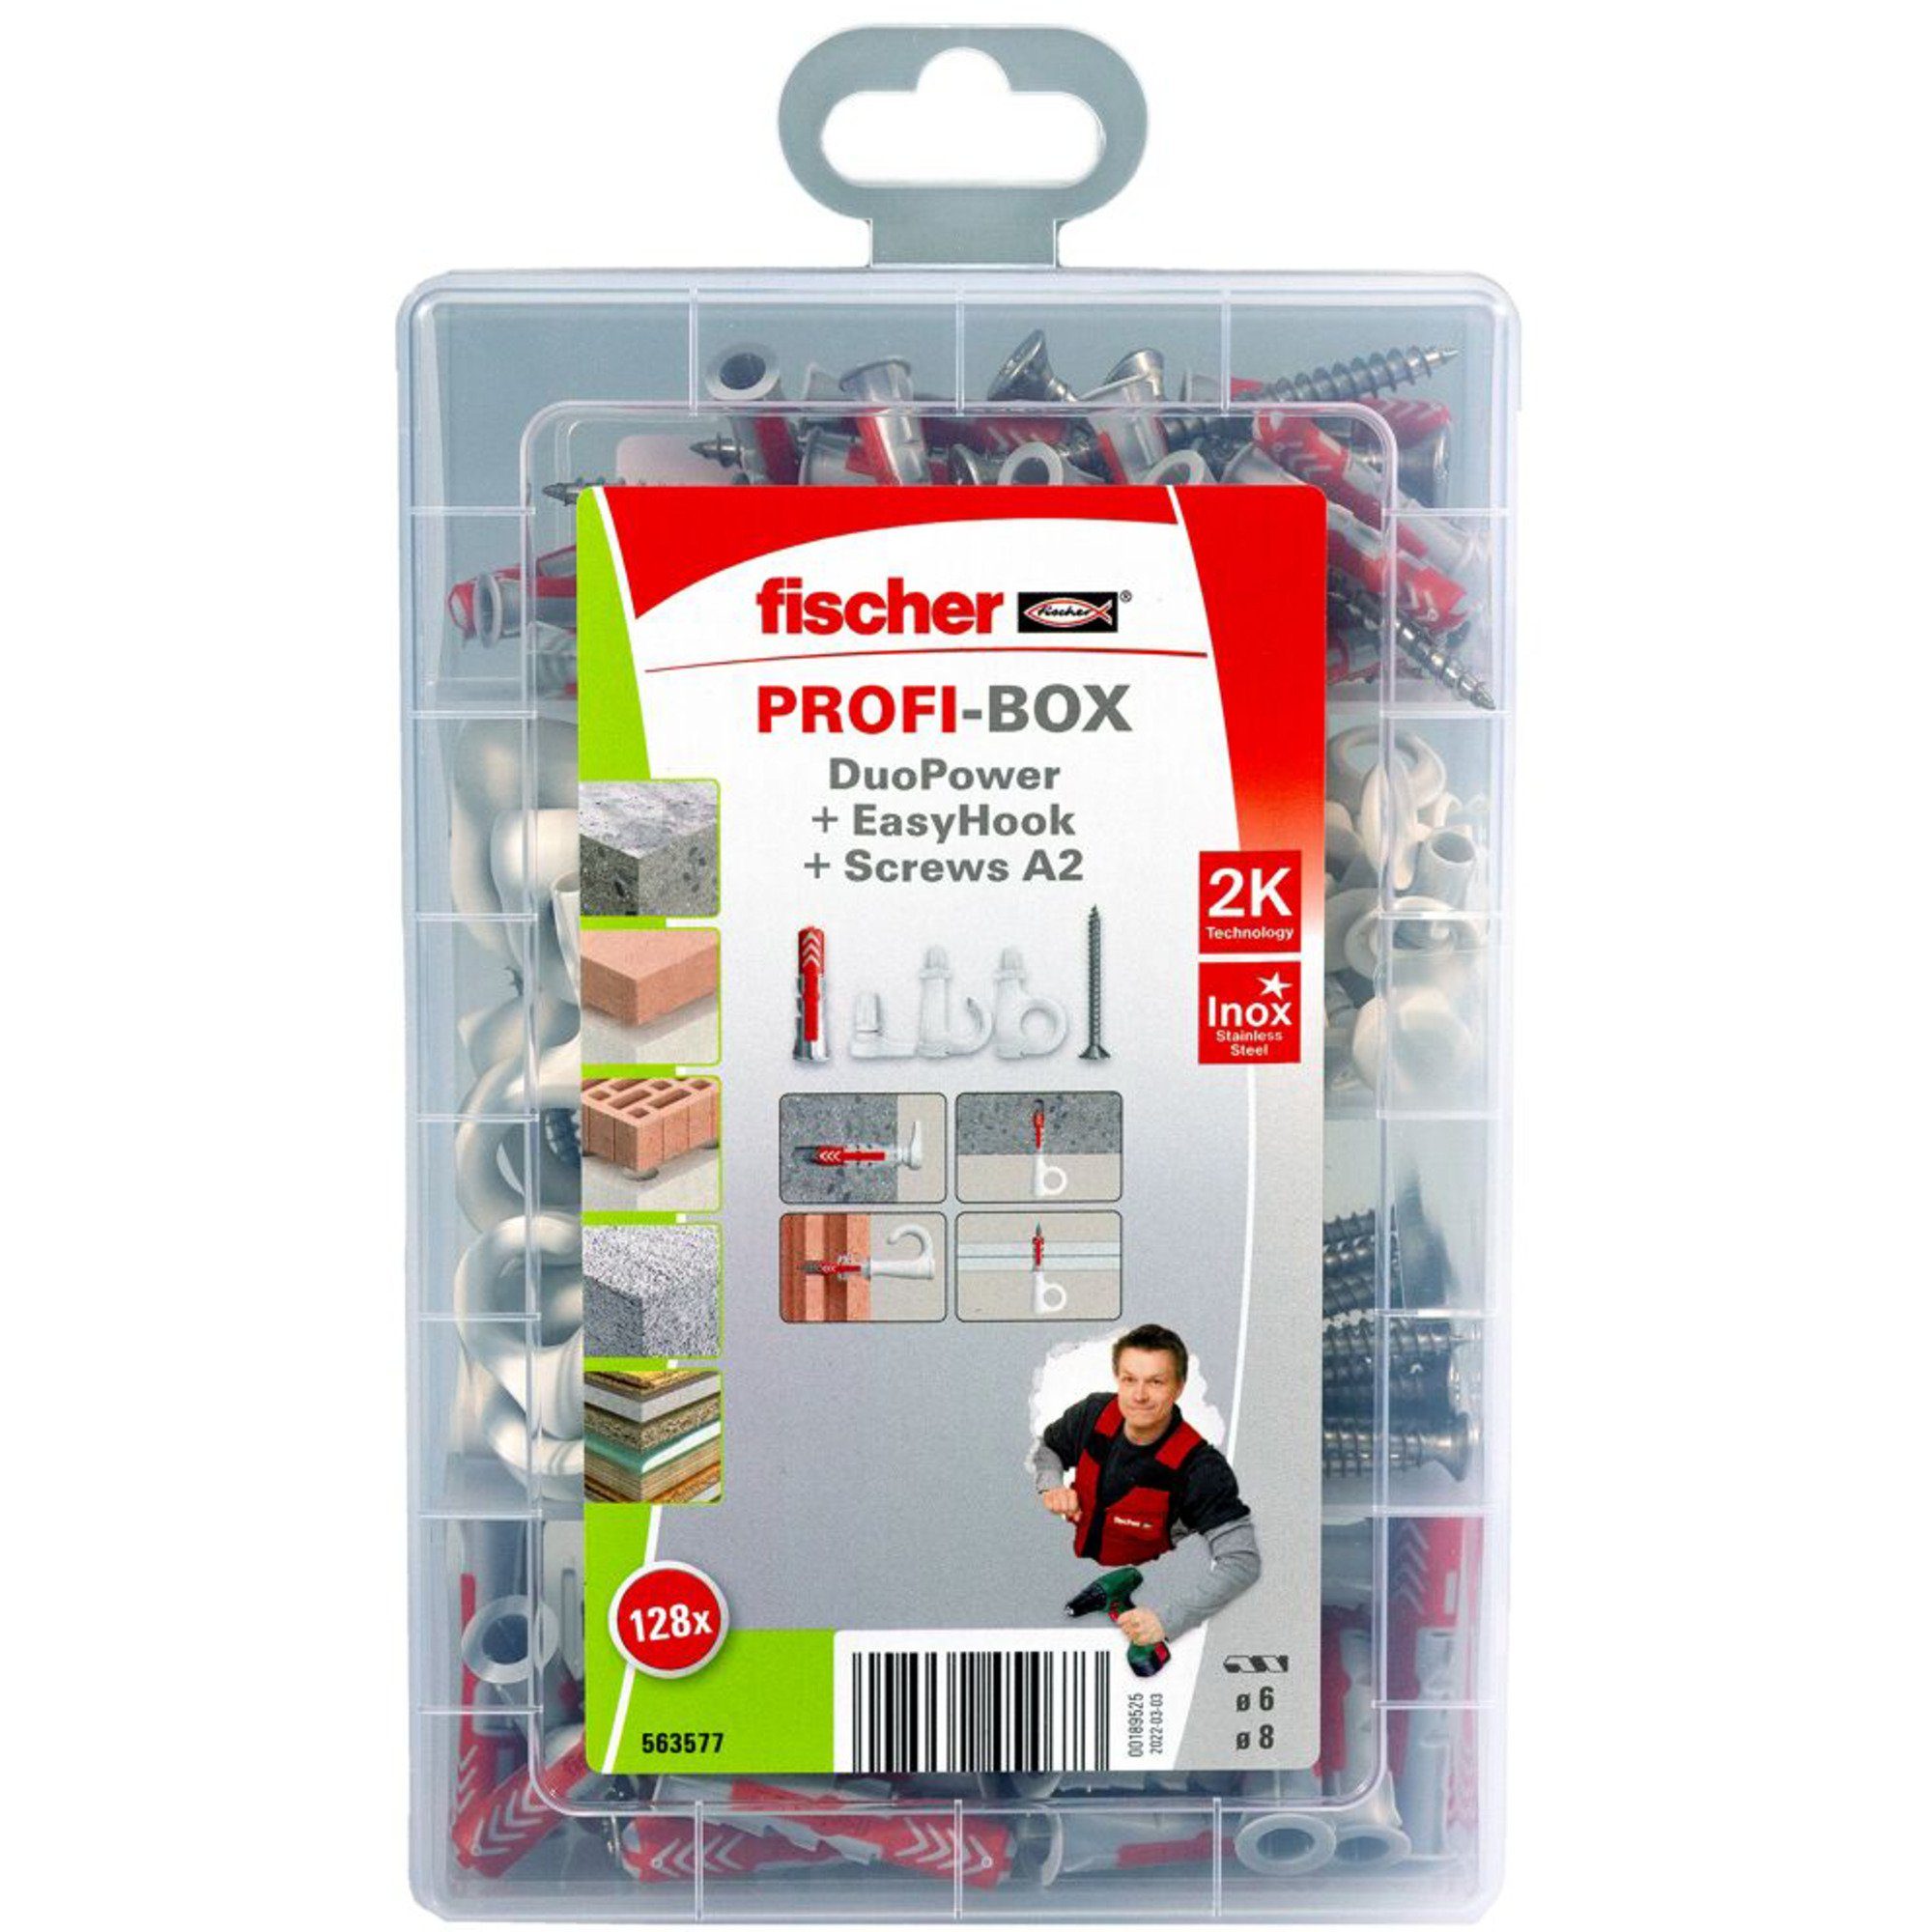 ProfiBox fischer Universaldübel EasyHook + + Fischer DuoPower Schraube